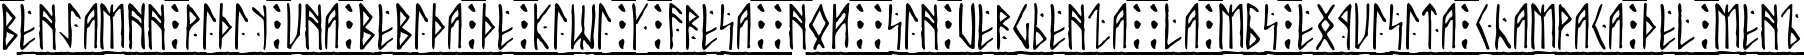 Пример написания шрифтом Runic Alt текста на испанском